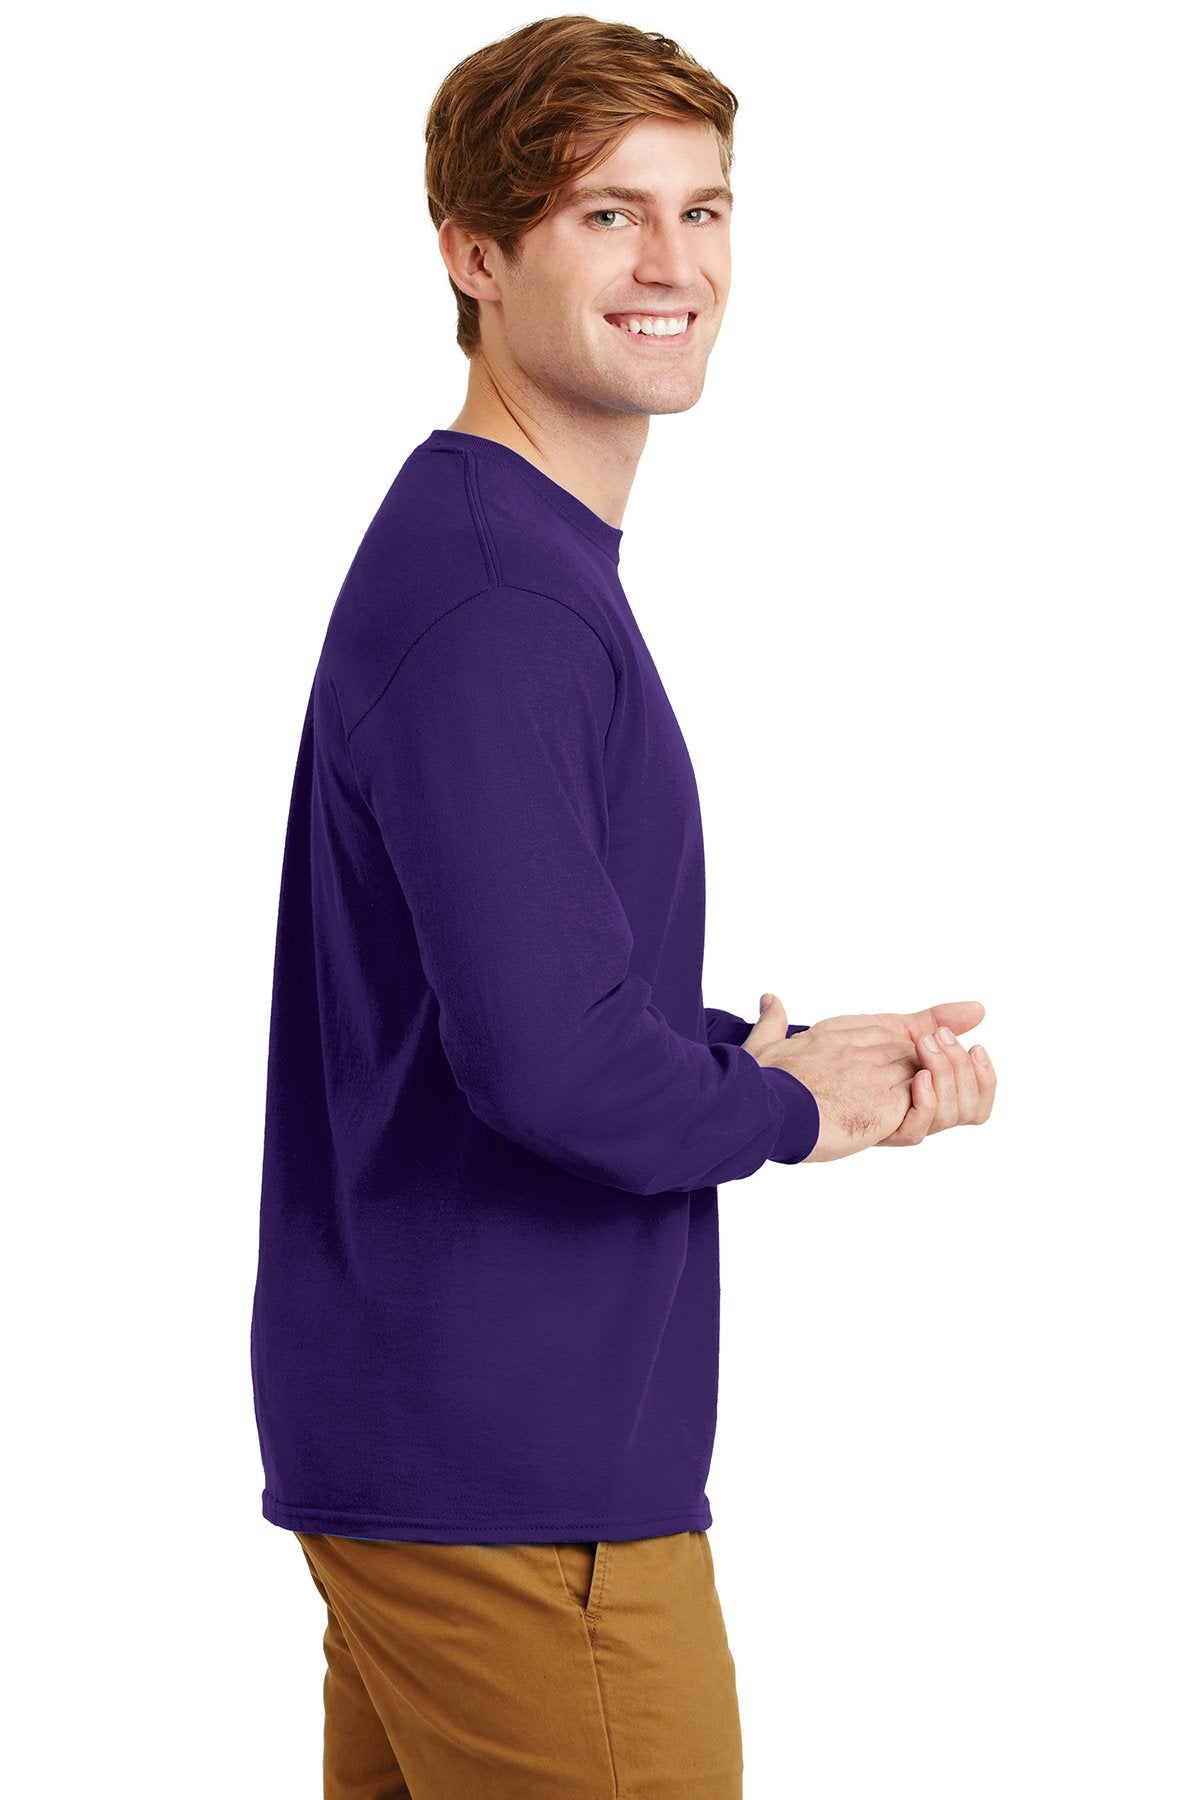 gildan ultra cotton long sleeve t shirt g2400 purple